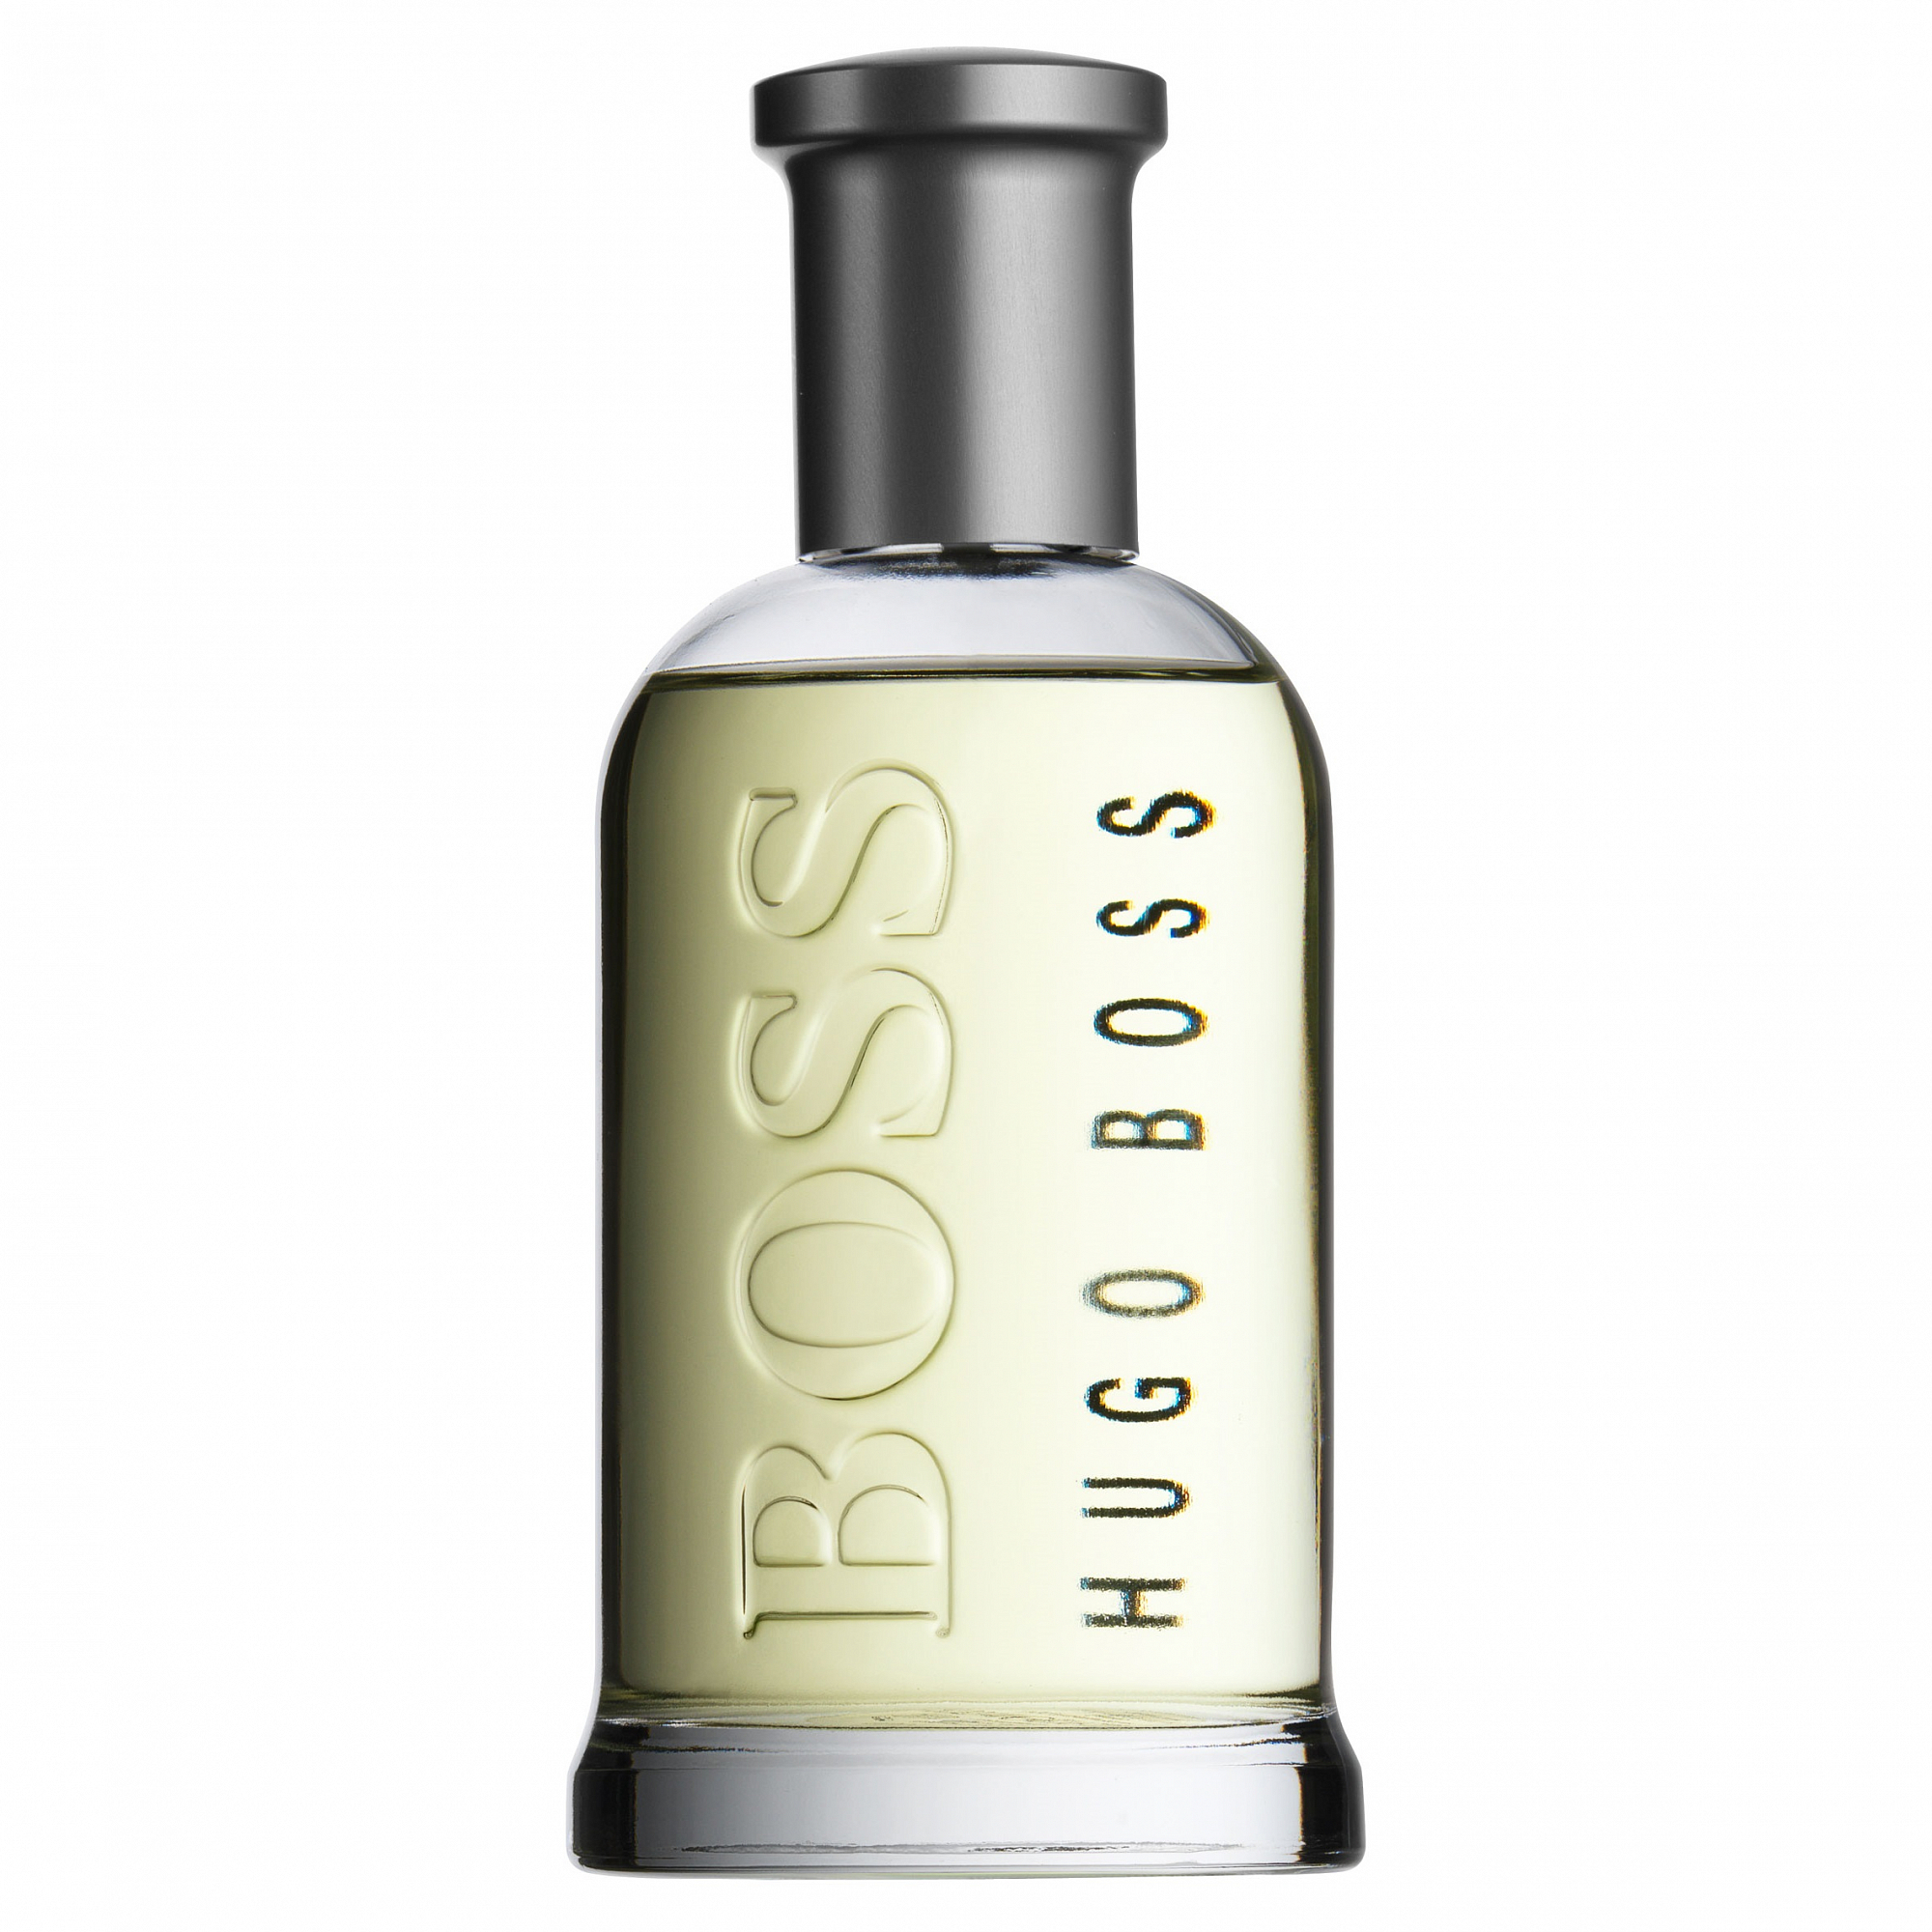 Хуго босс ботлед. Hugo Boss Bottled Eau de Toilette. Hugo Boss Boss 6, EDT., 100 ml. Hugo Boss Boss Bottled. Hugo Boss Boss Bottled №6.